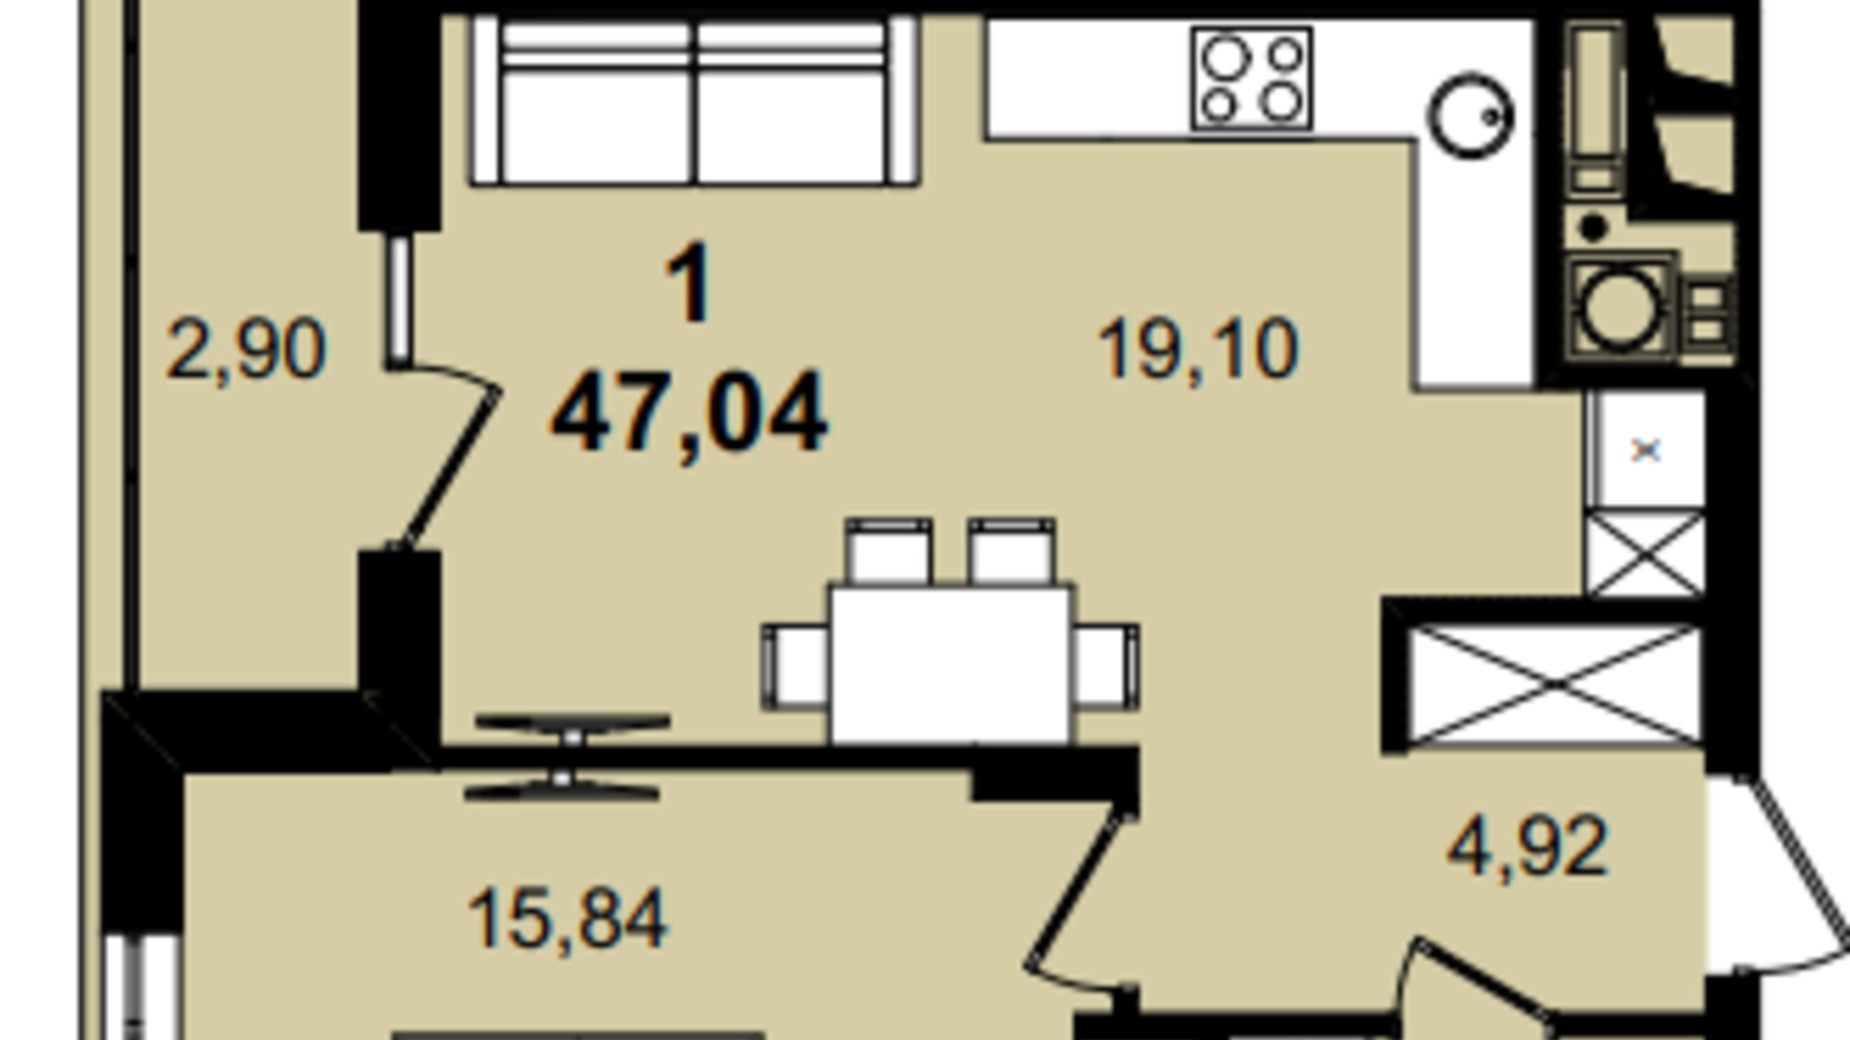 Планировка 1-комнатной квартиры в ЖК Infinity Park 47.04 м², фото 630803